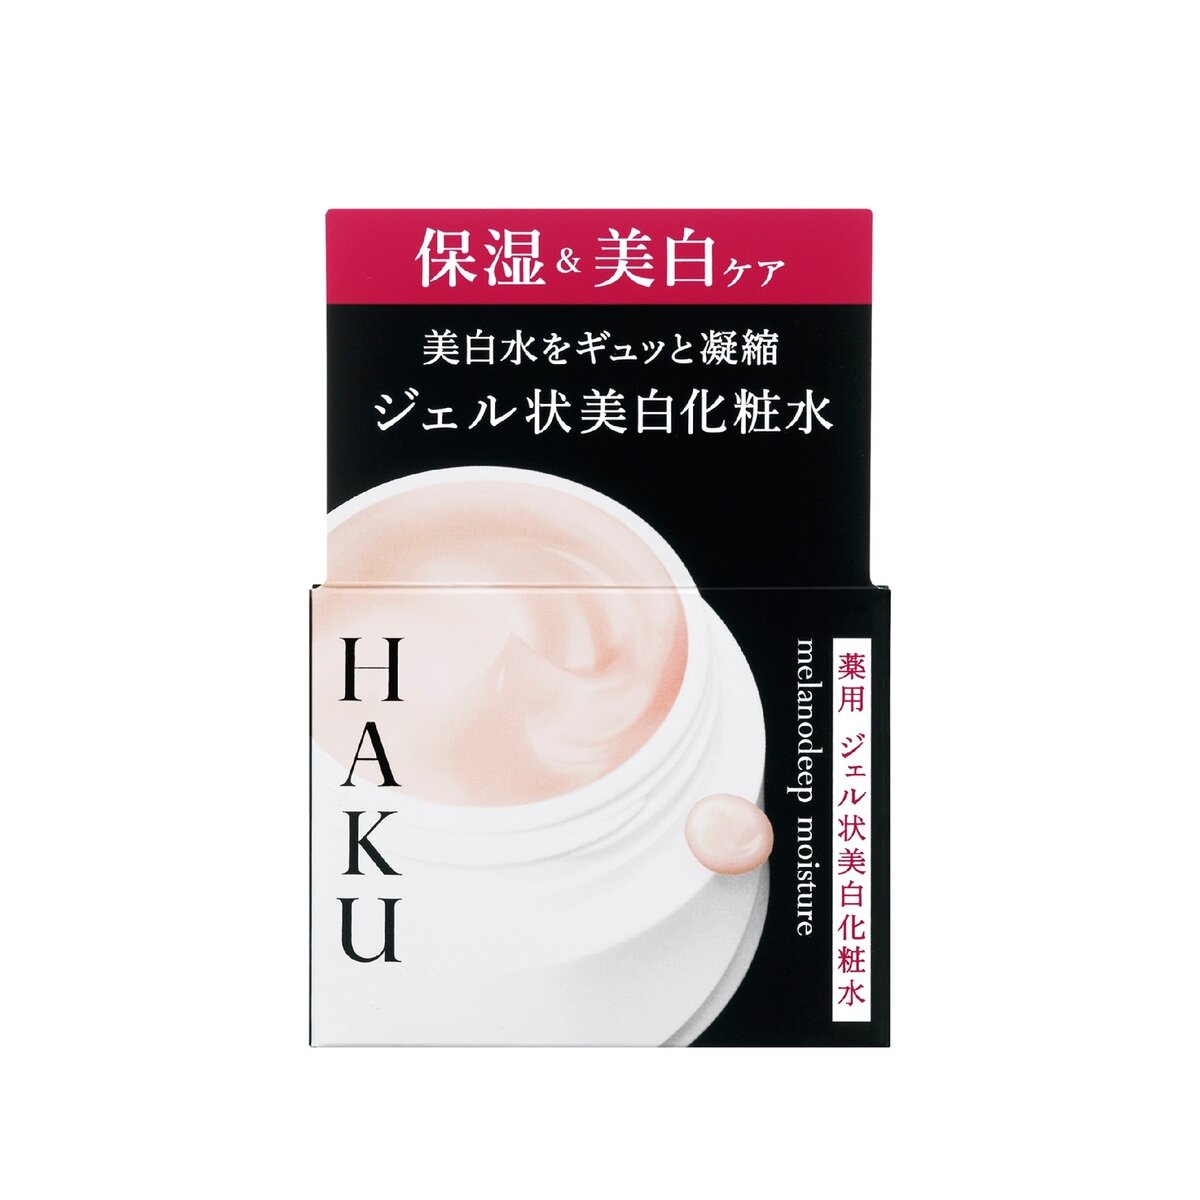 資生堂 HAKU メラノディープモイスチャー 薬用ジェル状美白化粧水・美容液